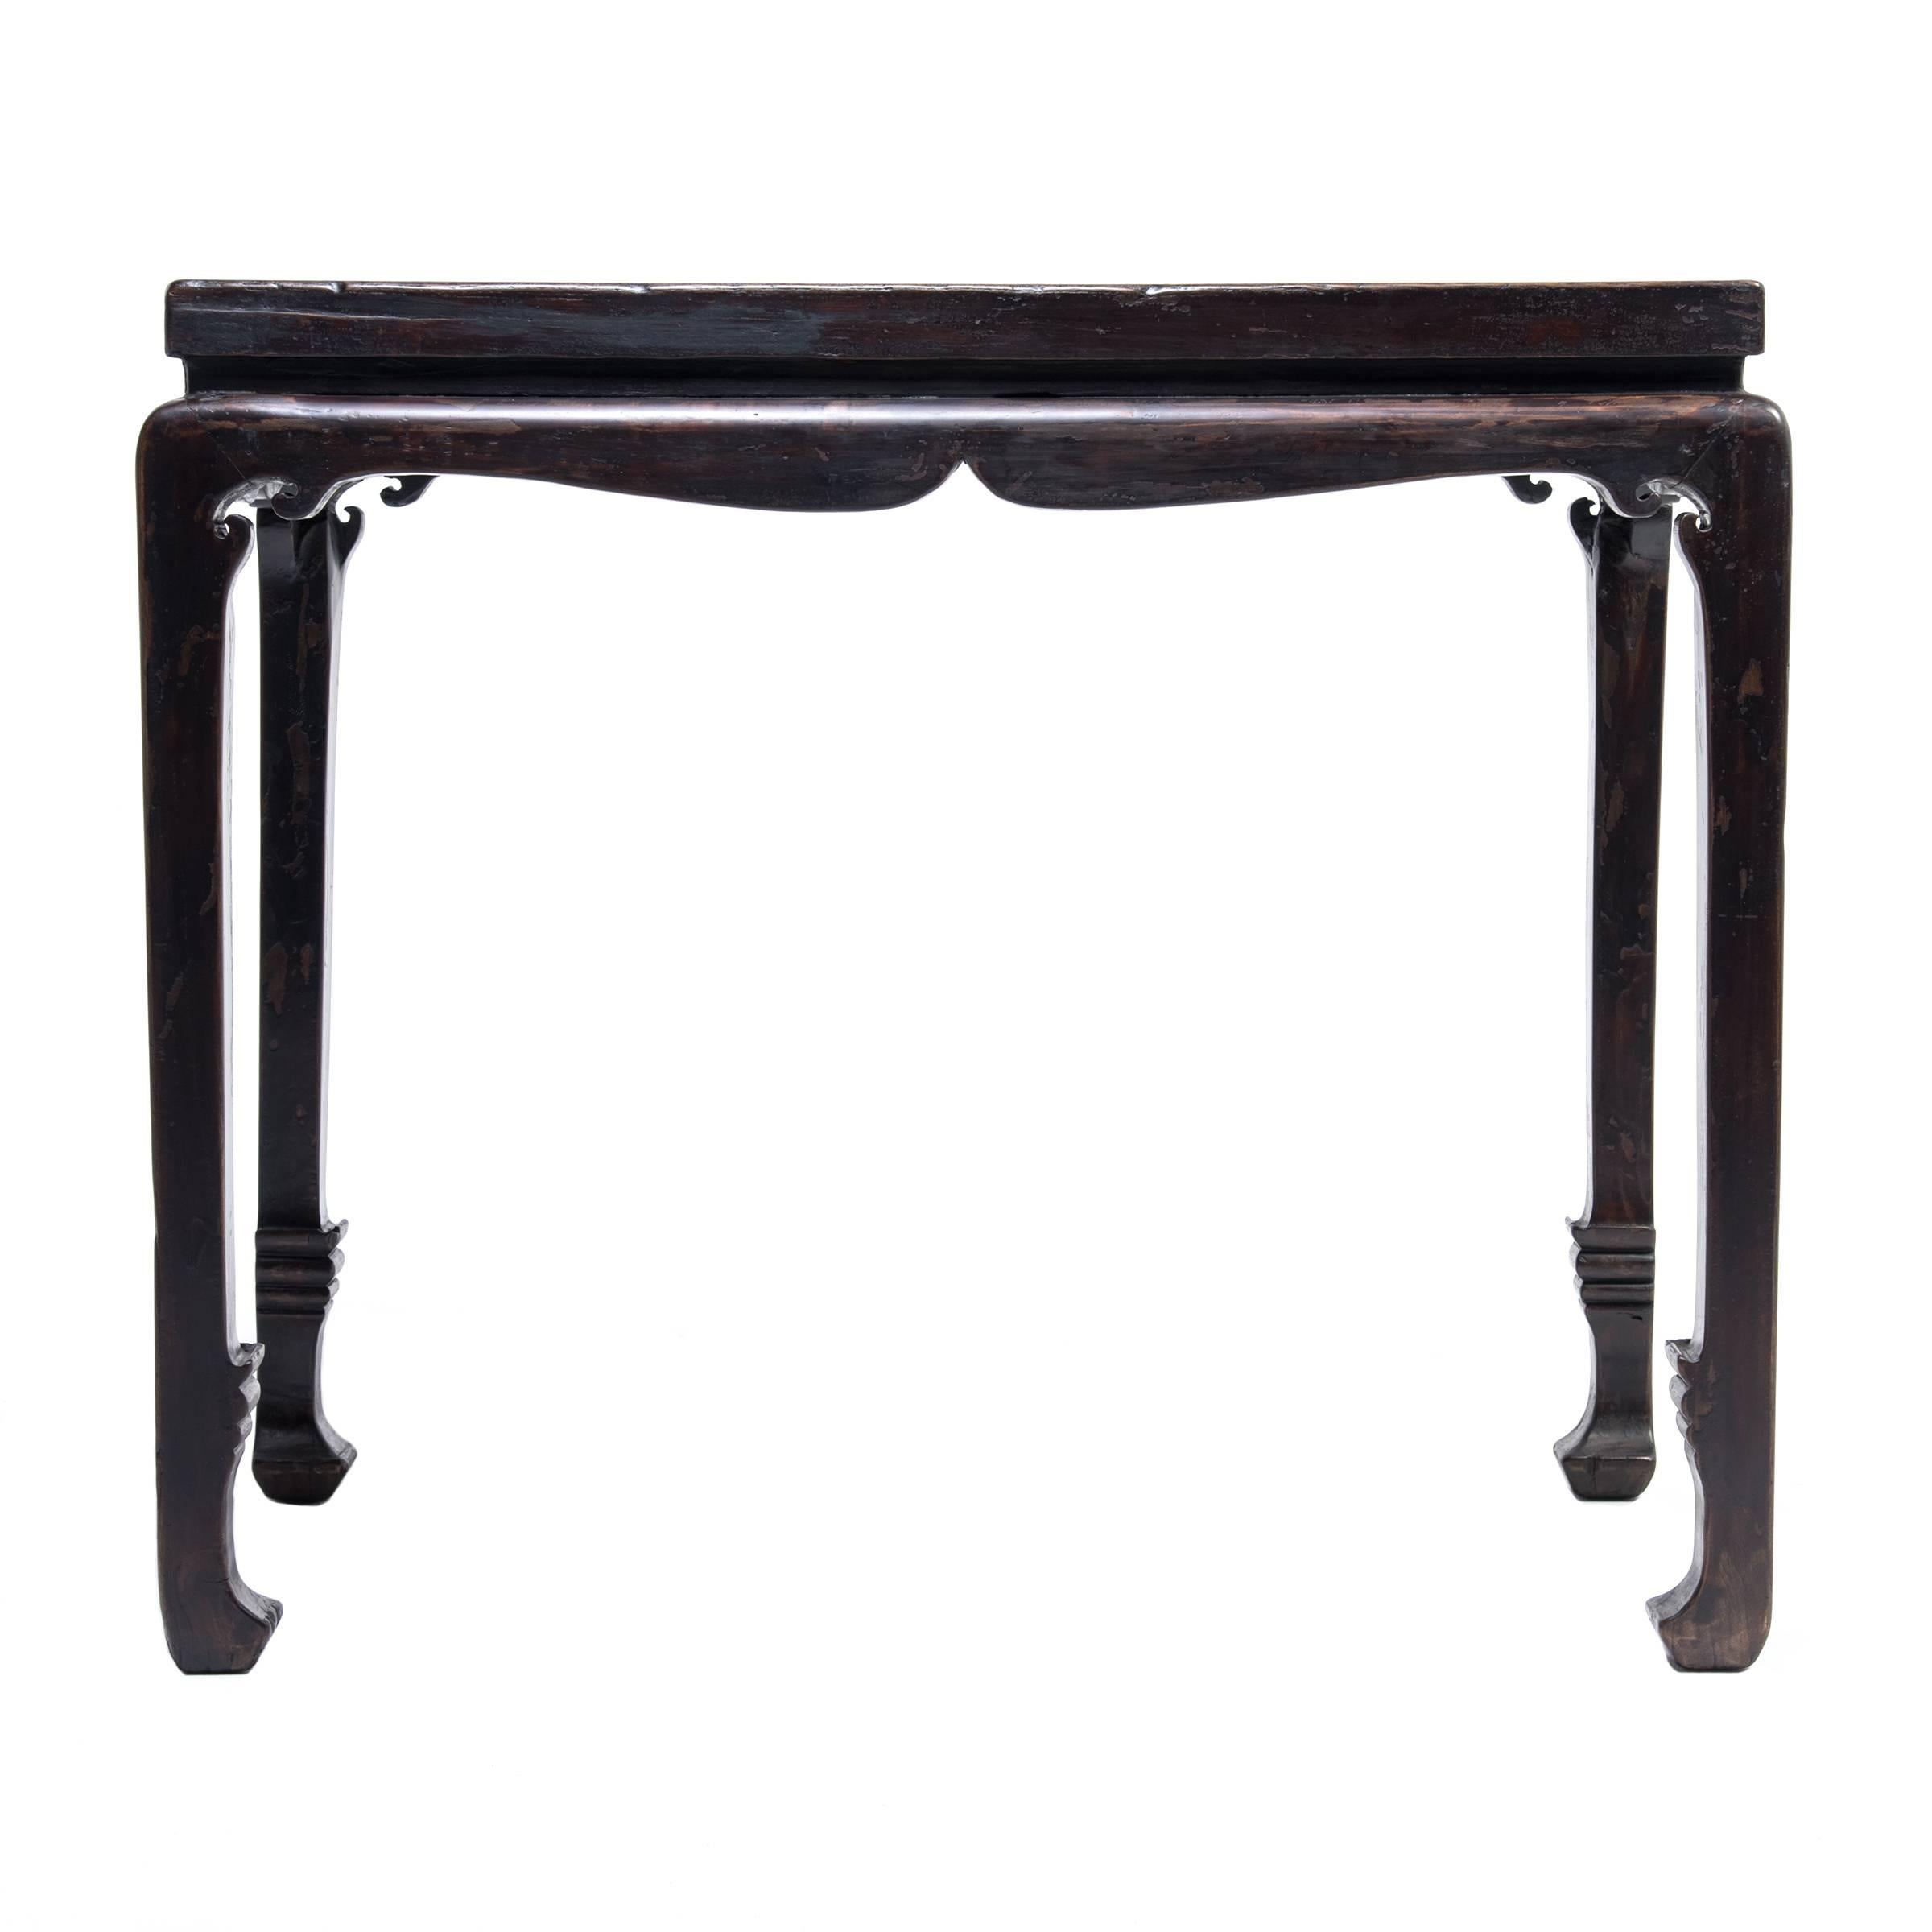 Dieser Tisch aus dem 19. Jahrhundert zeichnet sich durch lyrische Linien und klassische Proportionen aus. Er ist leicht an seiner gewölbten und geschwungenen Schürze und der schön ausbalancierten abstrakten Schwertform seiner Unterschenkel und Füße